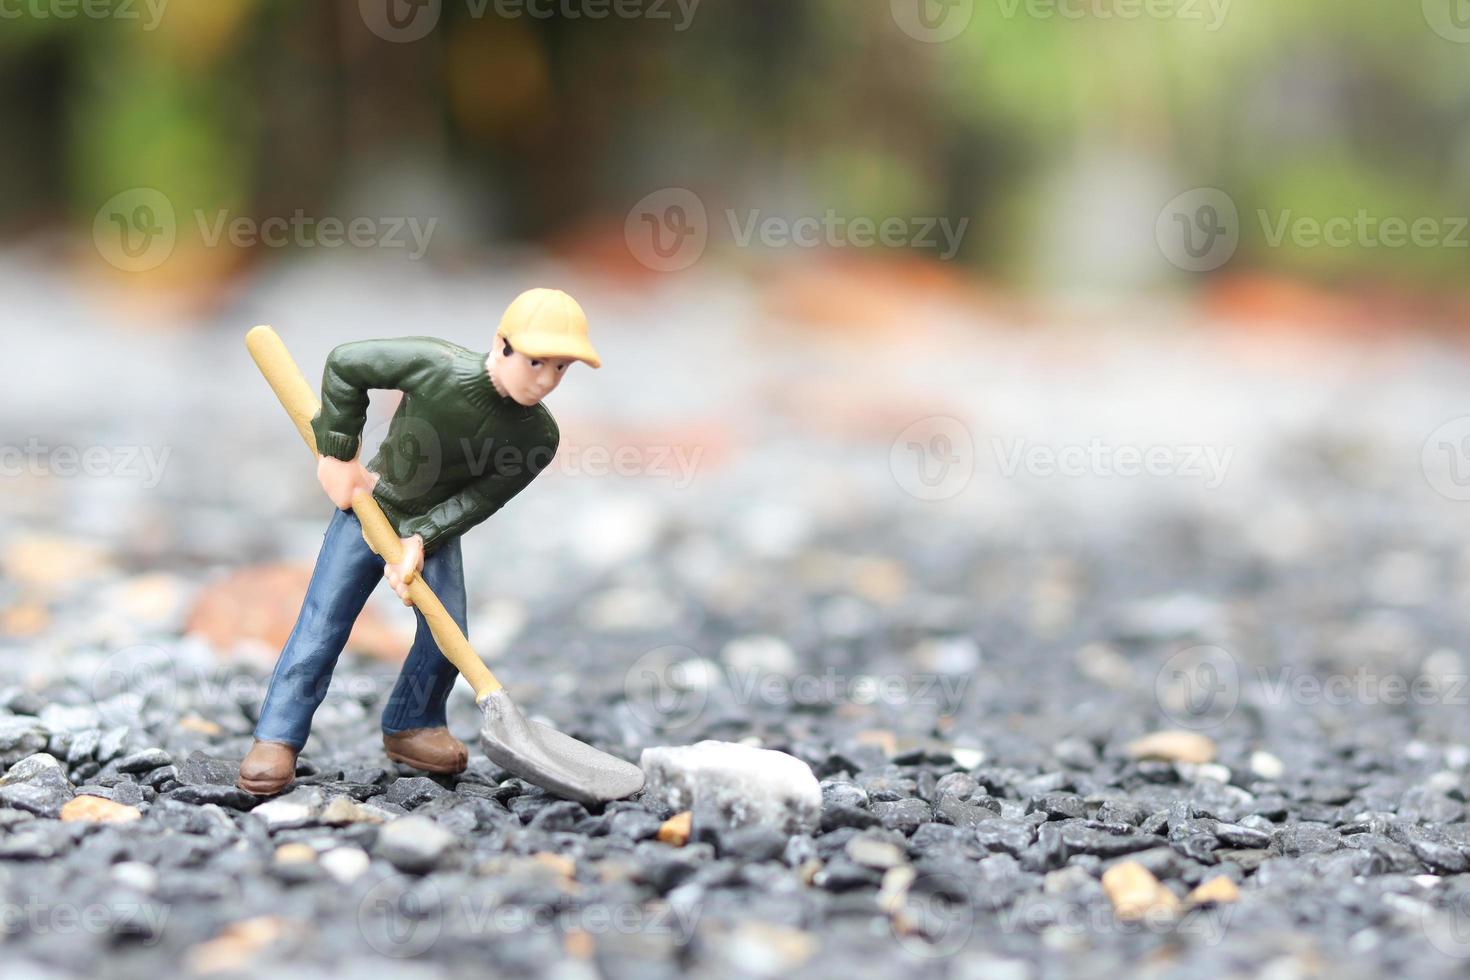 poupée de travailleur miniature tenant une pelle pour travailler, homme mineur au travail figurine minuscule modèle de jouet creusant le sol ou le jardinage photo